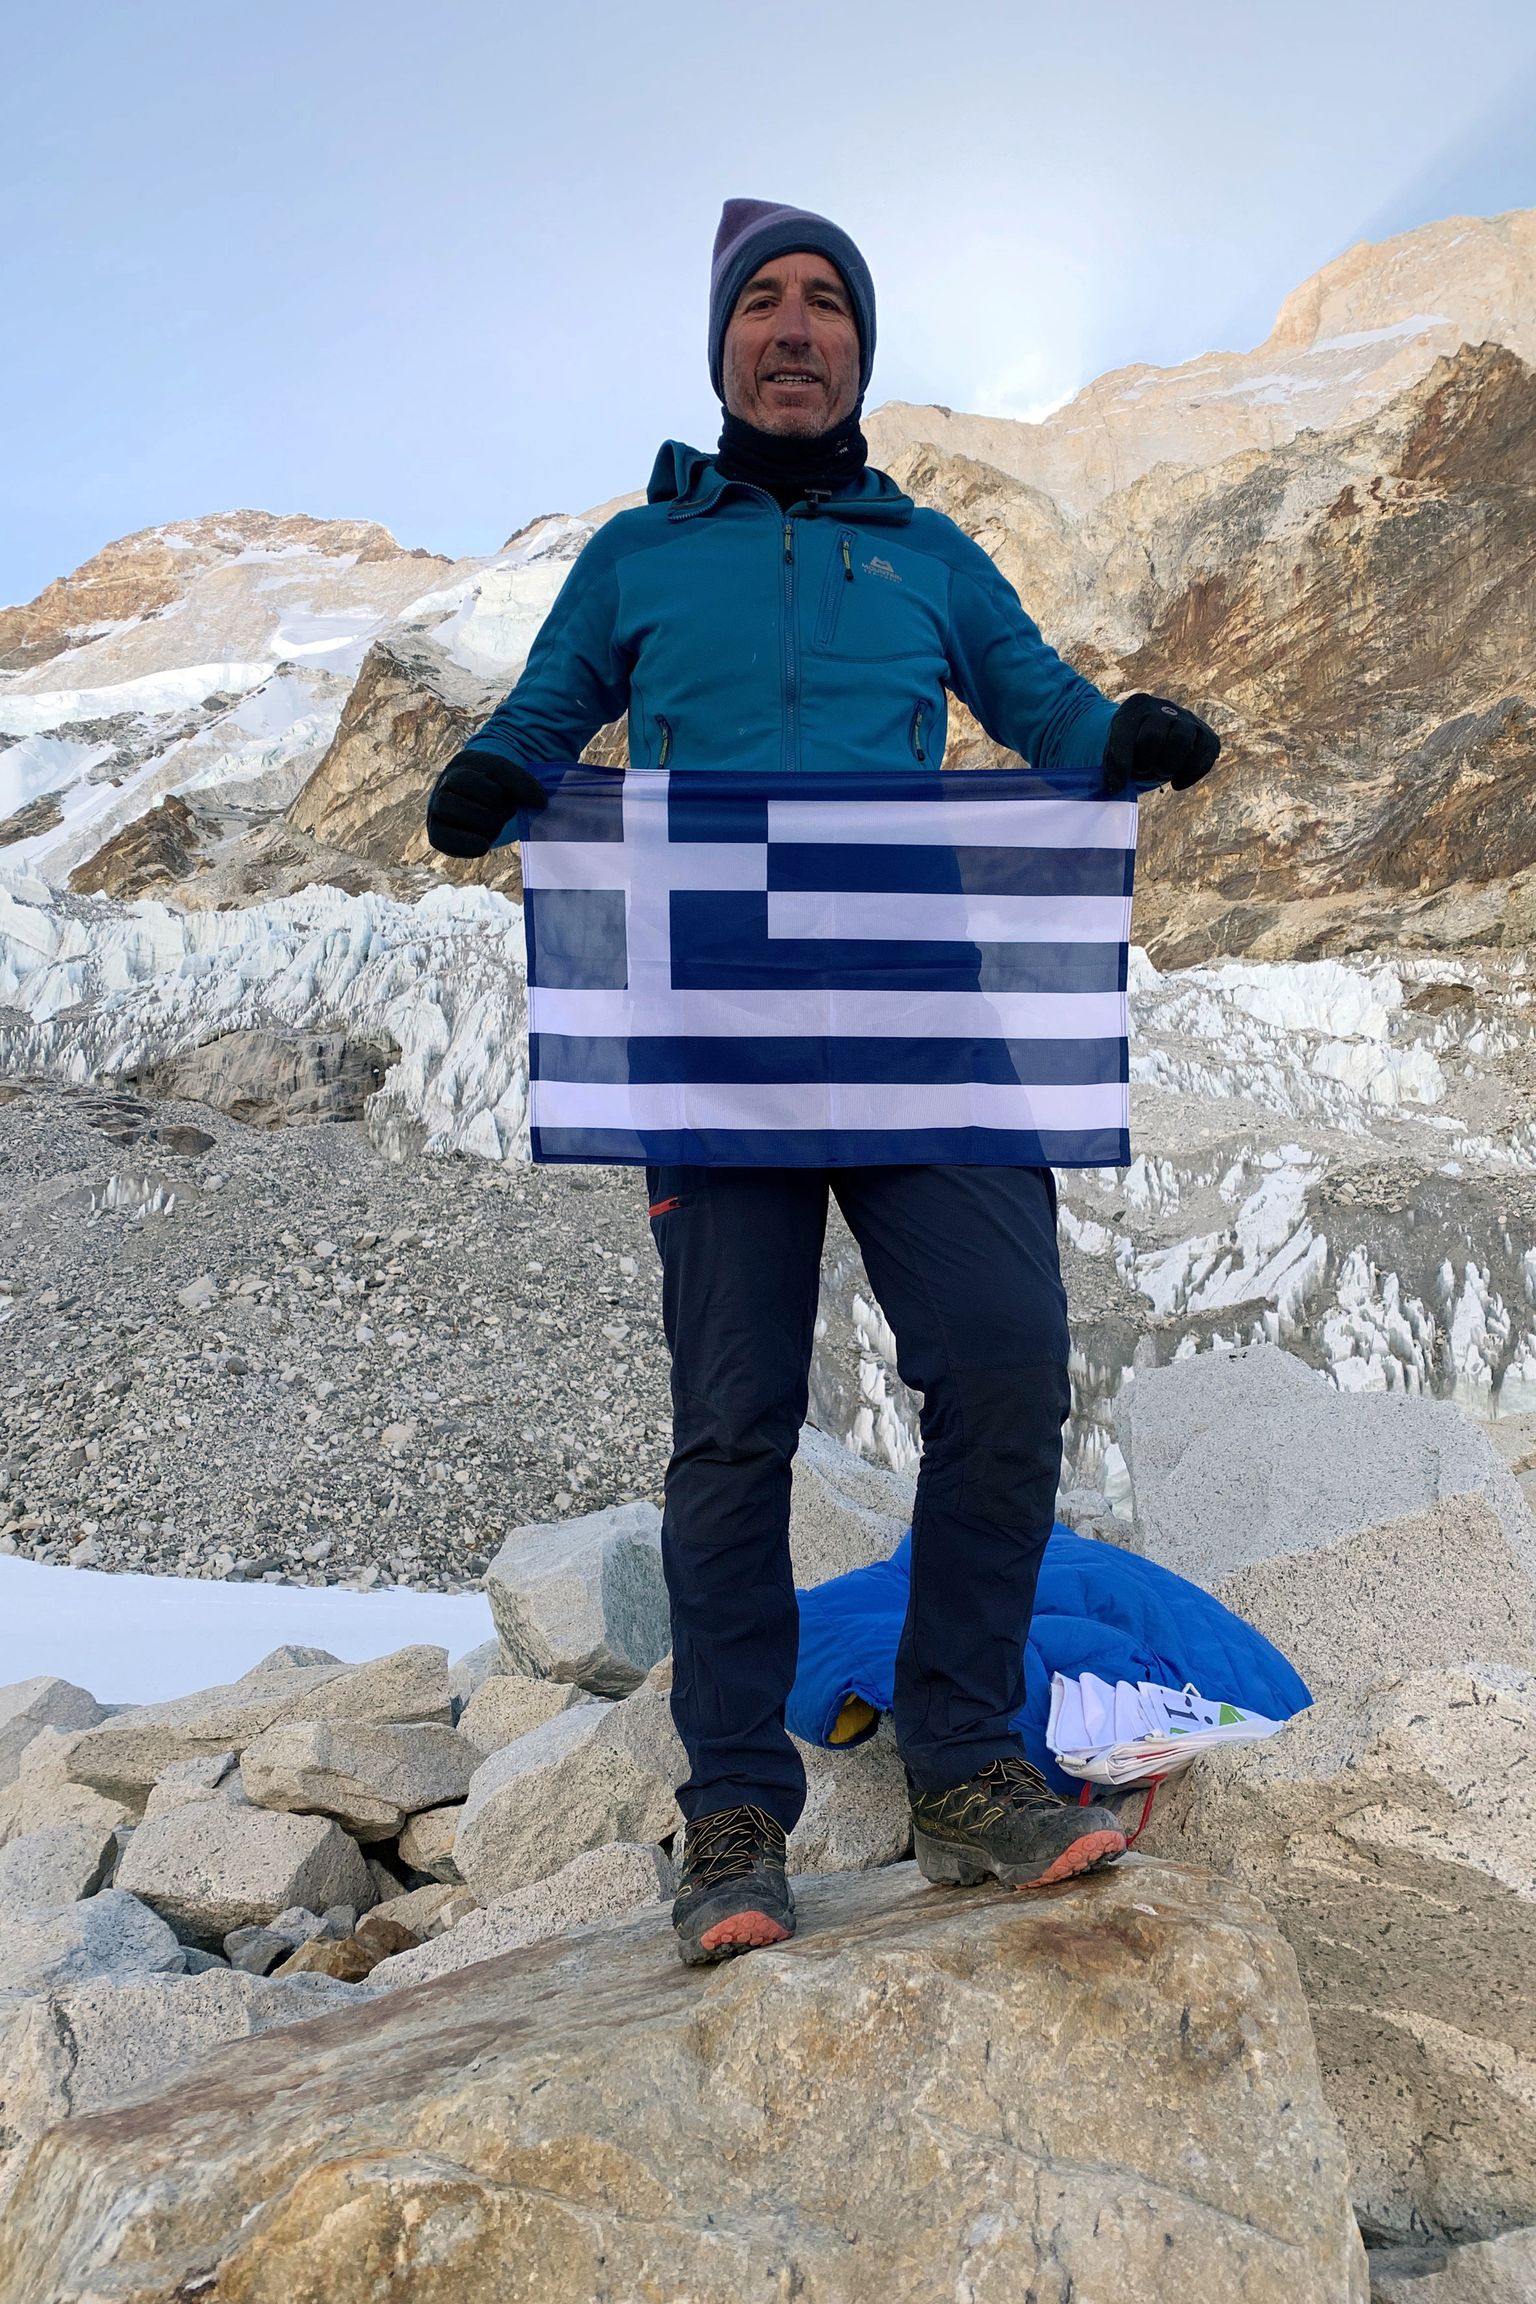 Kreeka mägironija Antonis Sykaris dateerimata fotol. Sykaris kaotas 12. aprillil elu, kui laskus Himaalajas 8167-meetriselt Dhaulagiri mäelt